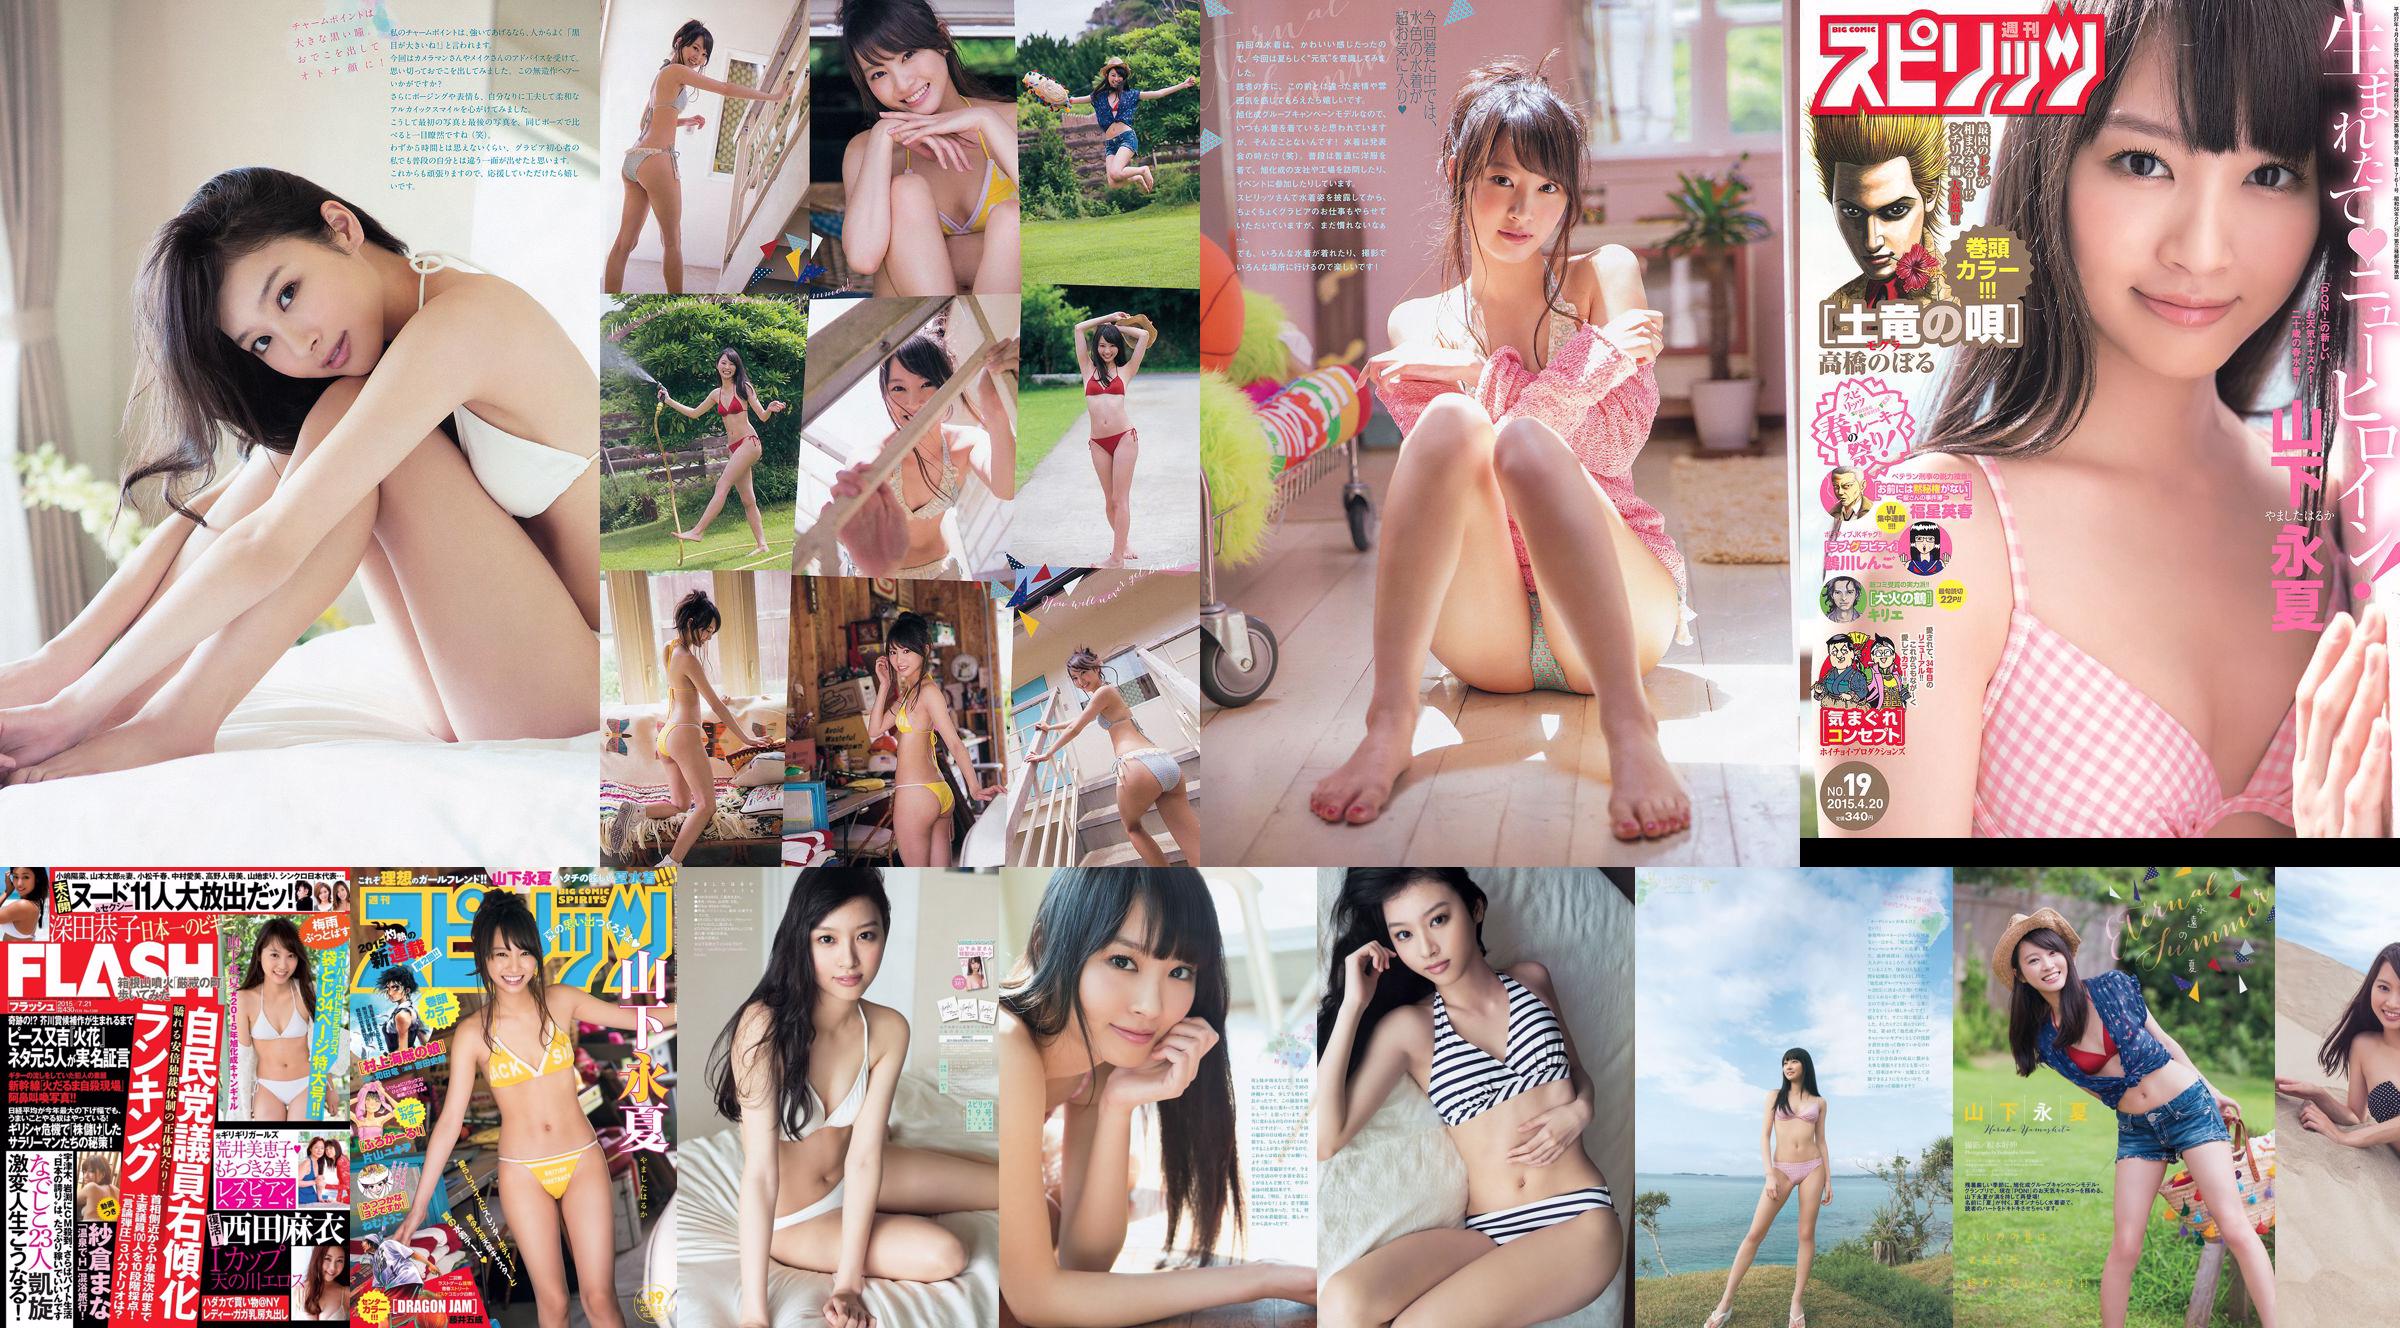 [Weekly Big Comic Spirits] Yamashita Yongxia 2015 No.19 Photo Magazine No.81a2fa Page 3